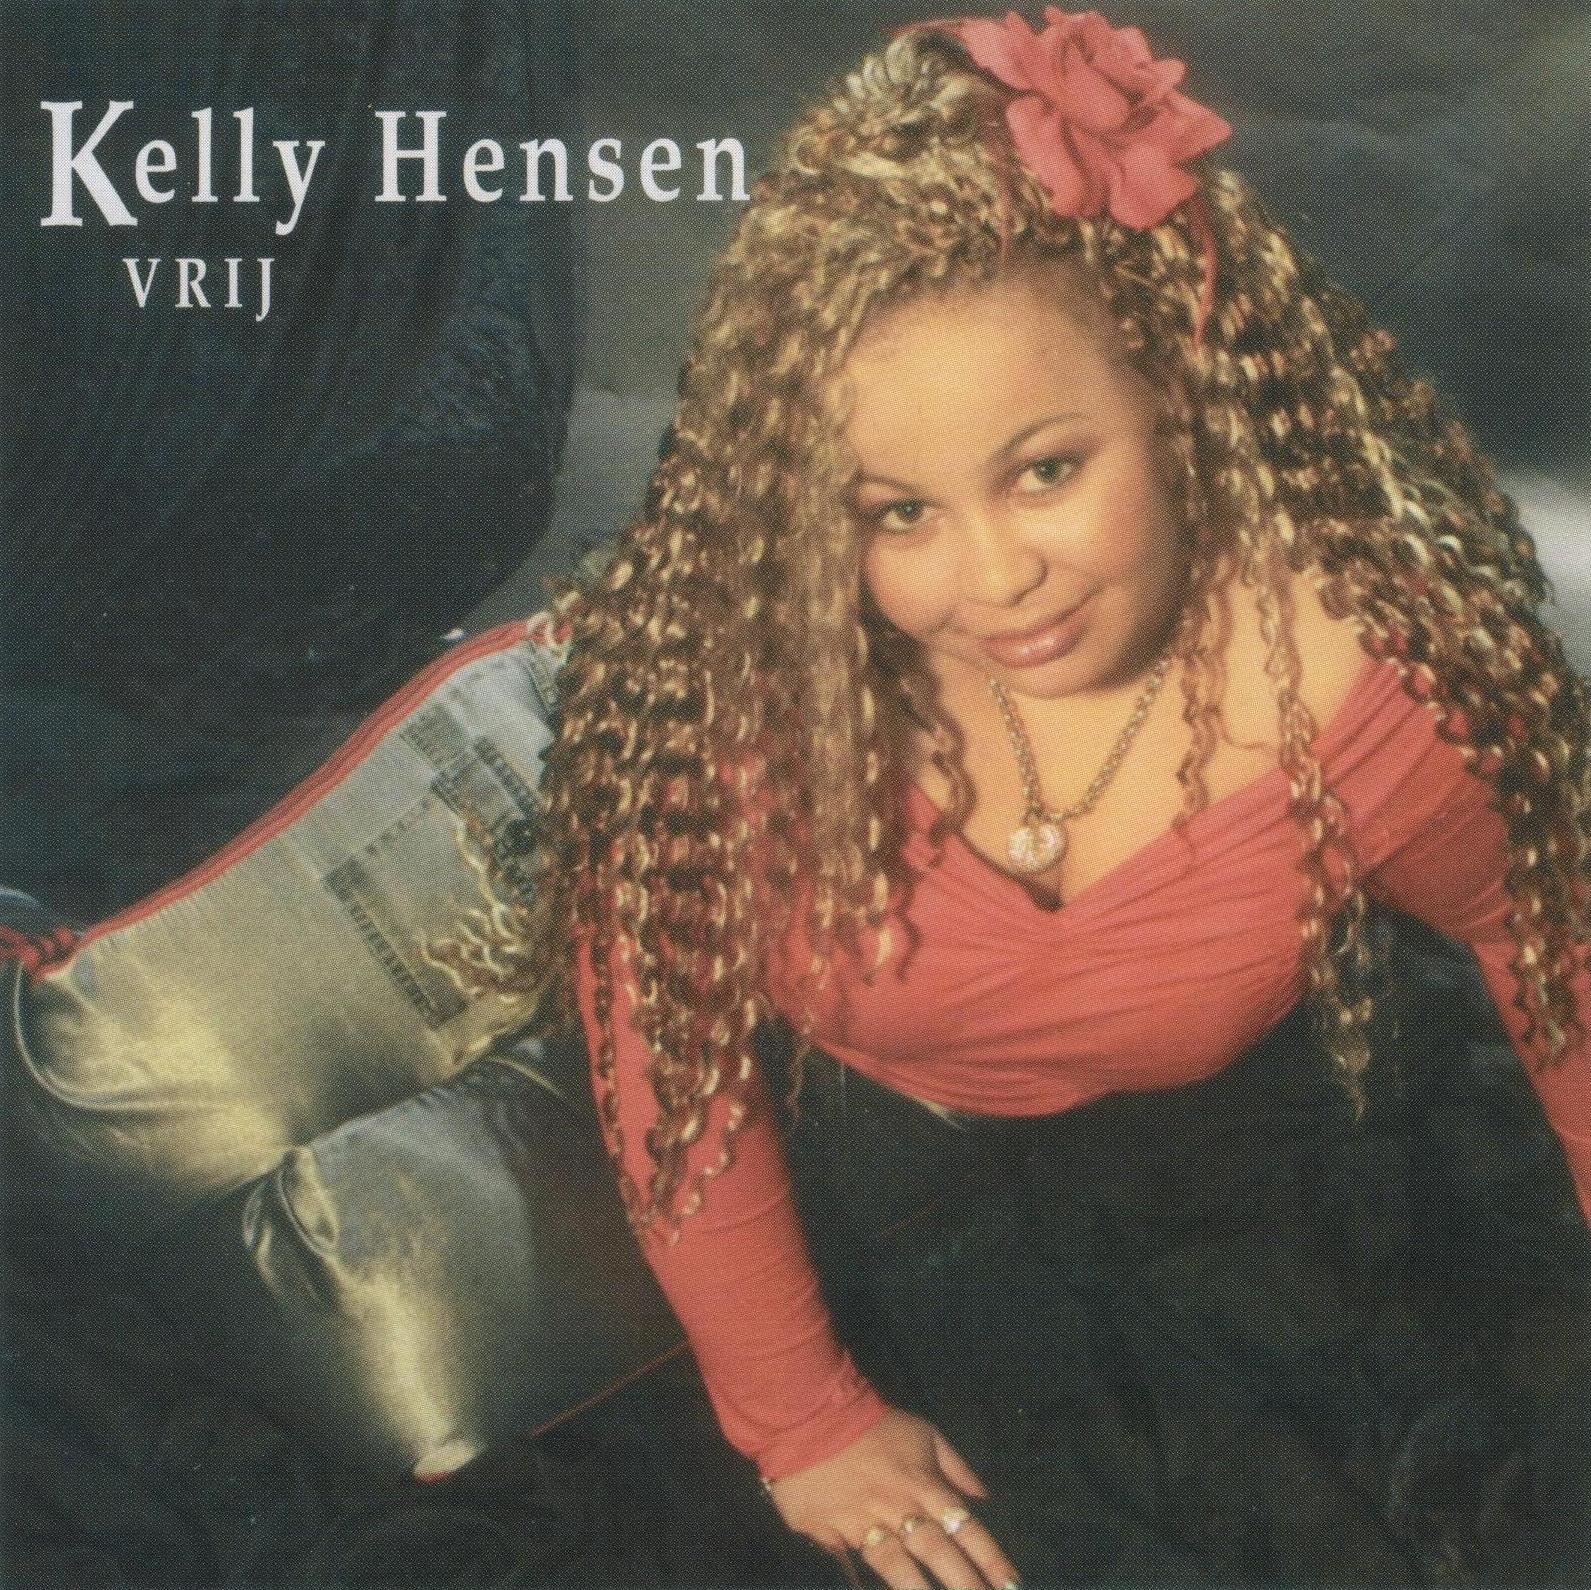 Kelly hensen - vrij en 2 bonus nummers